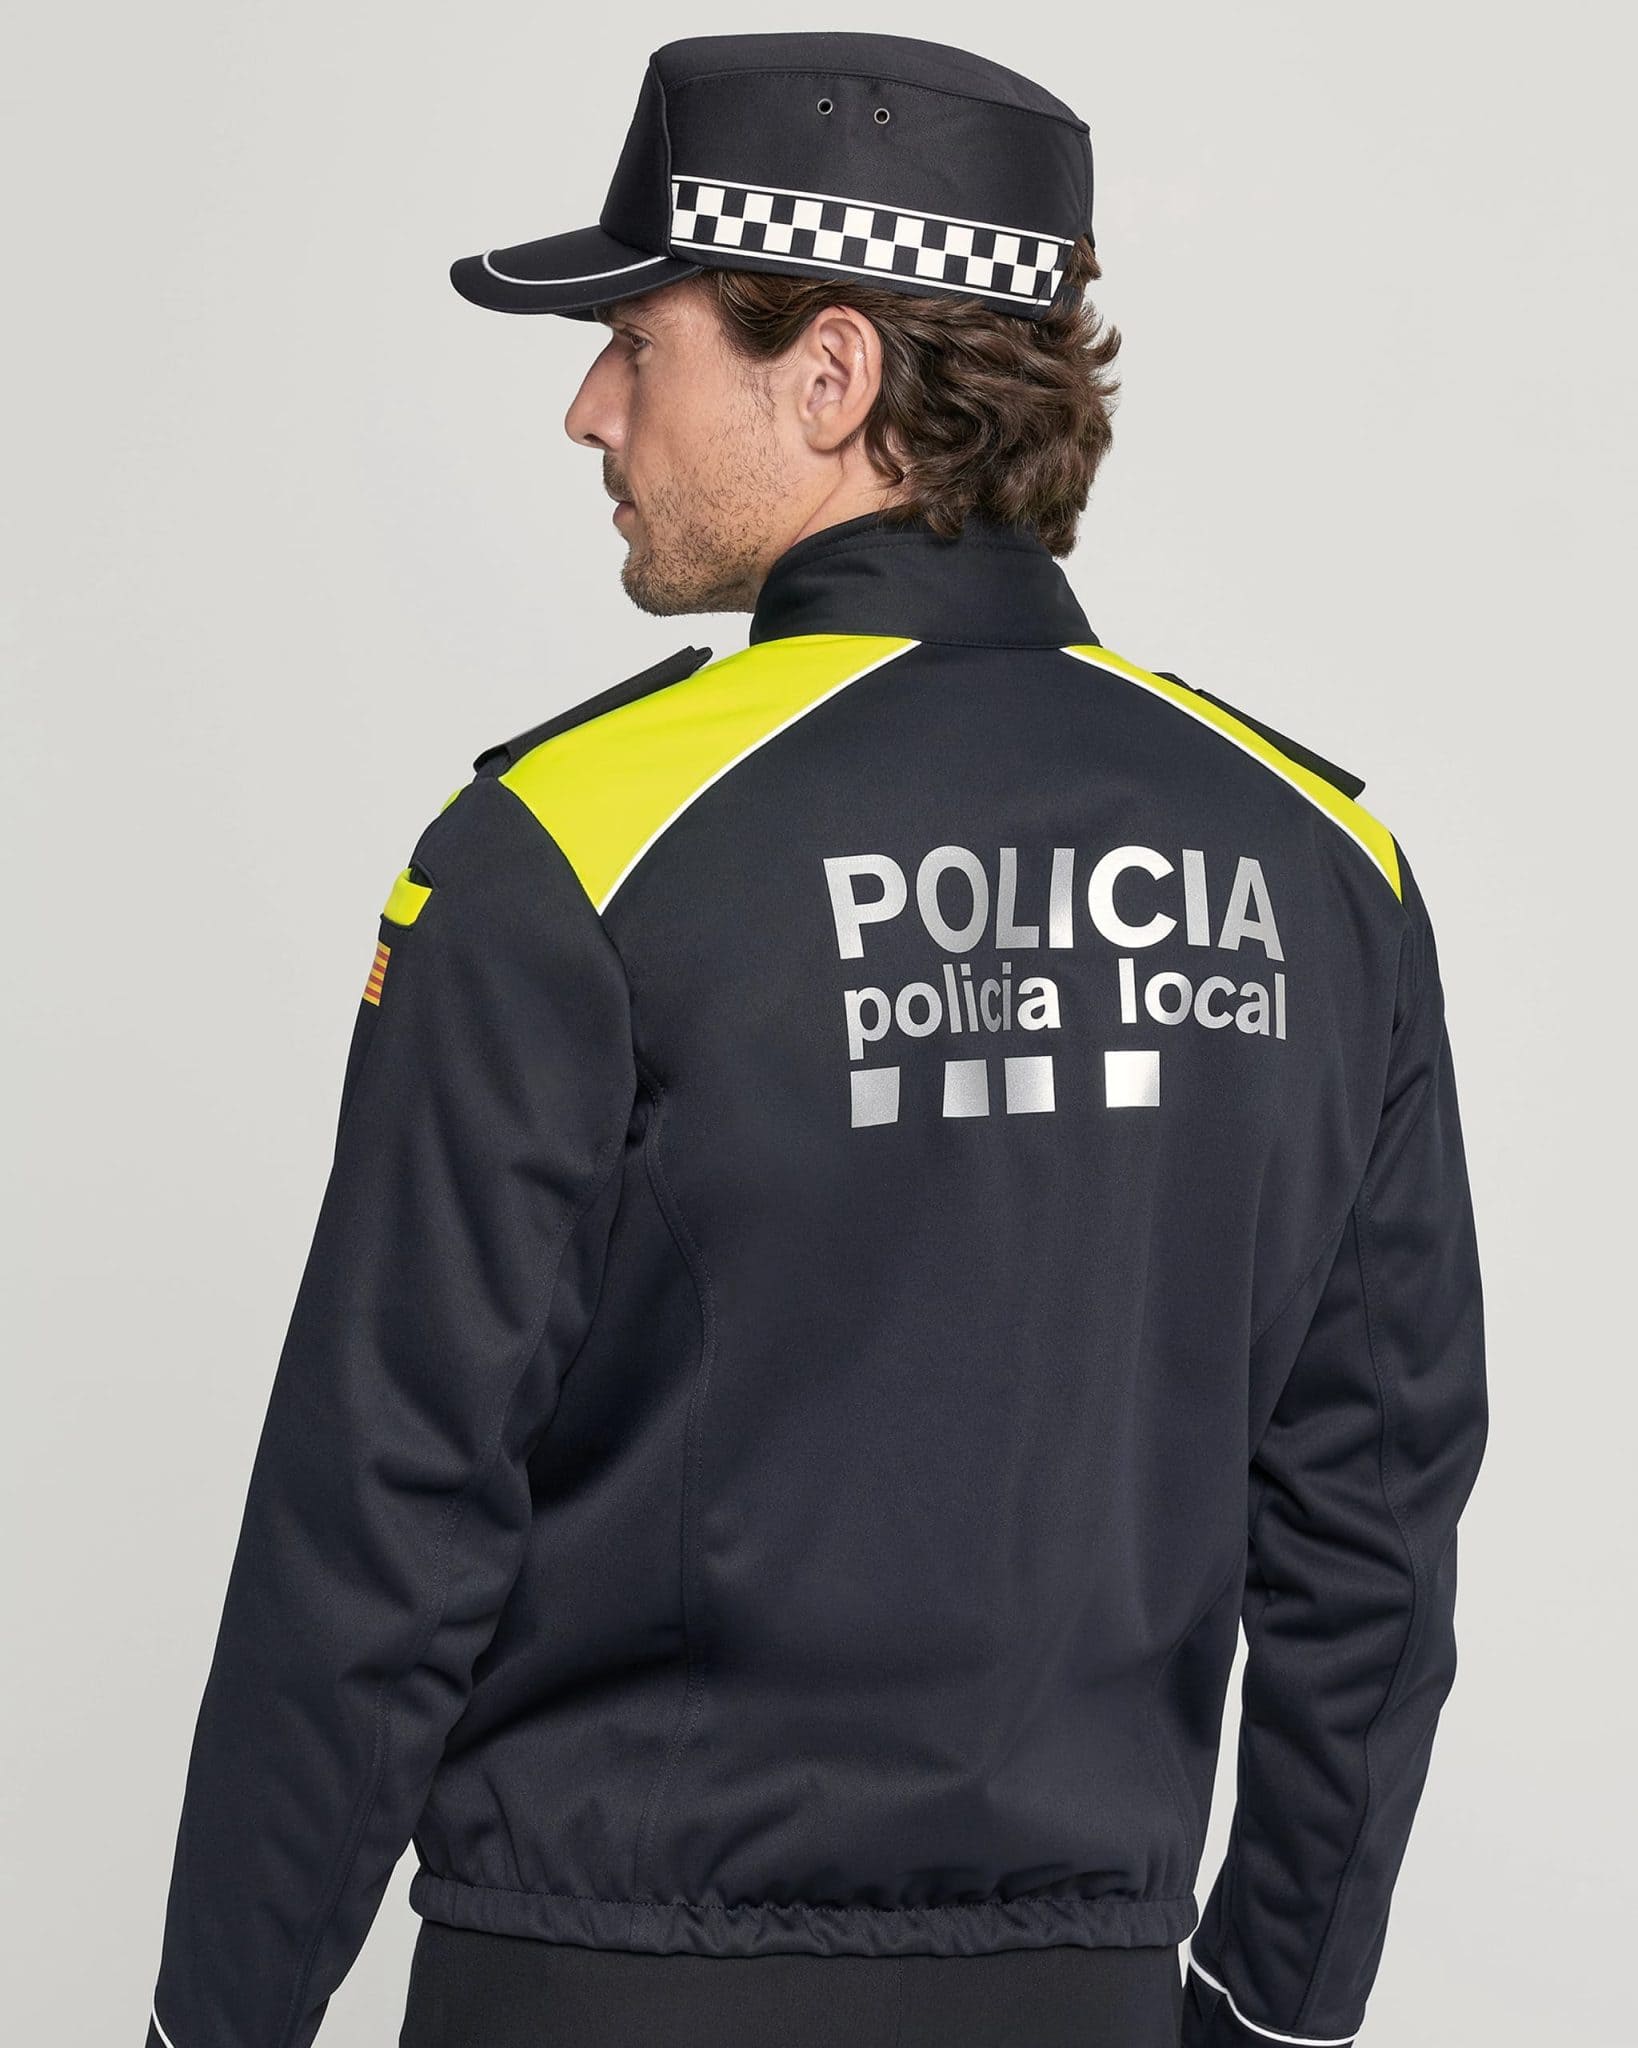 uniformes policía local de Cataluña chaqueta bearshell